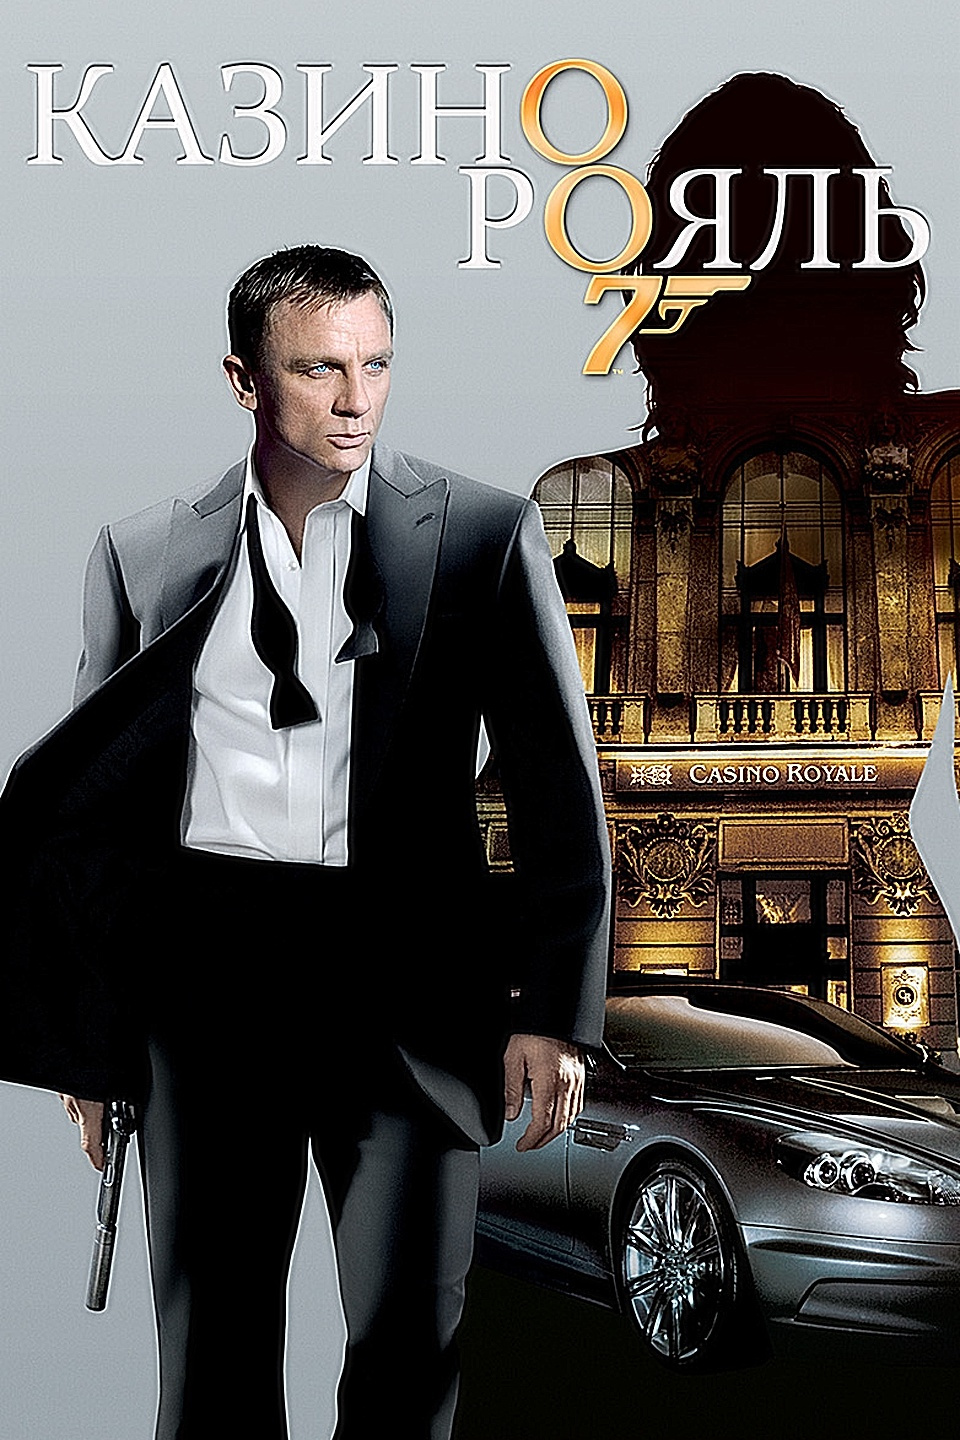 смотреть фильм агент 007 казино рояль онлайн в хорошем качестве бесплатно